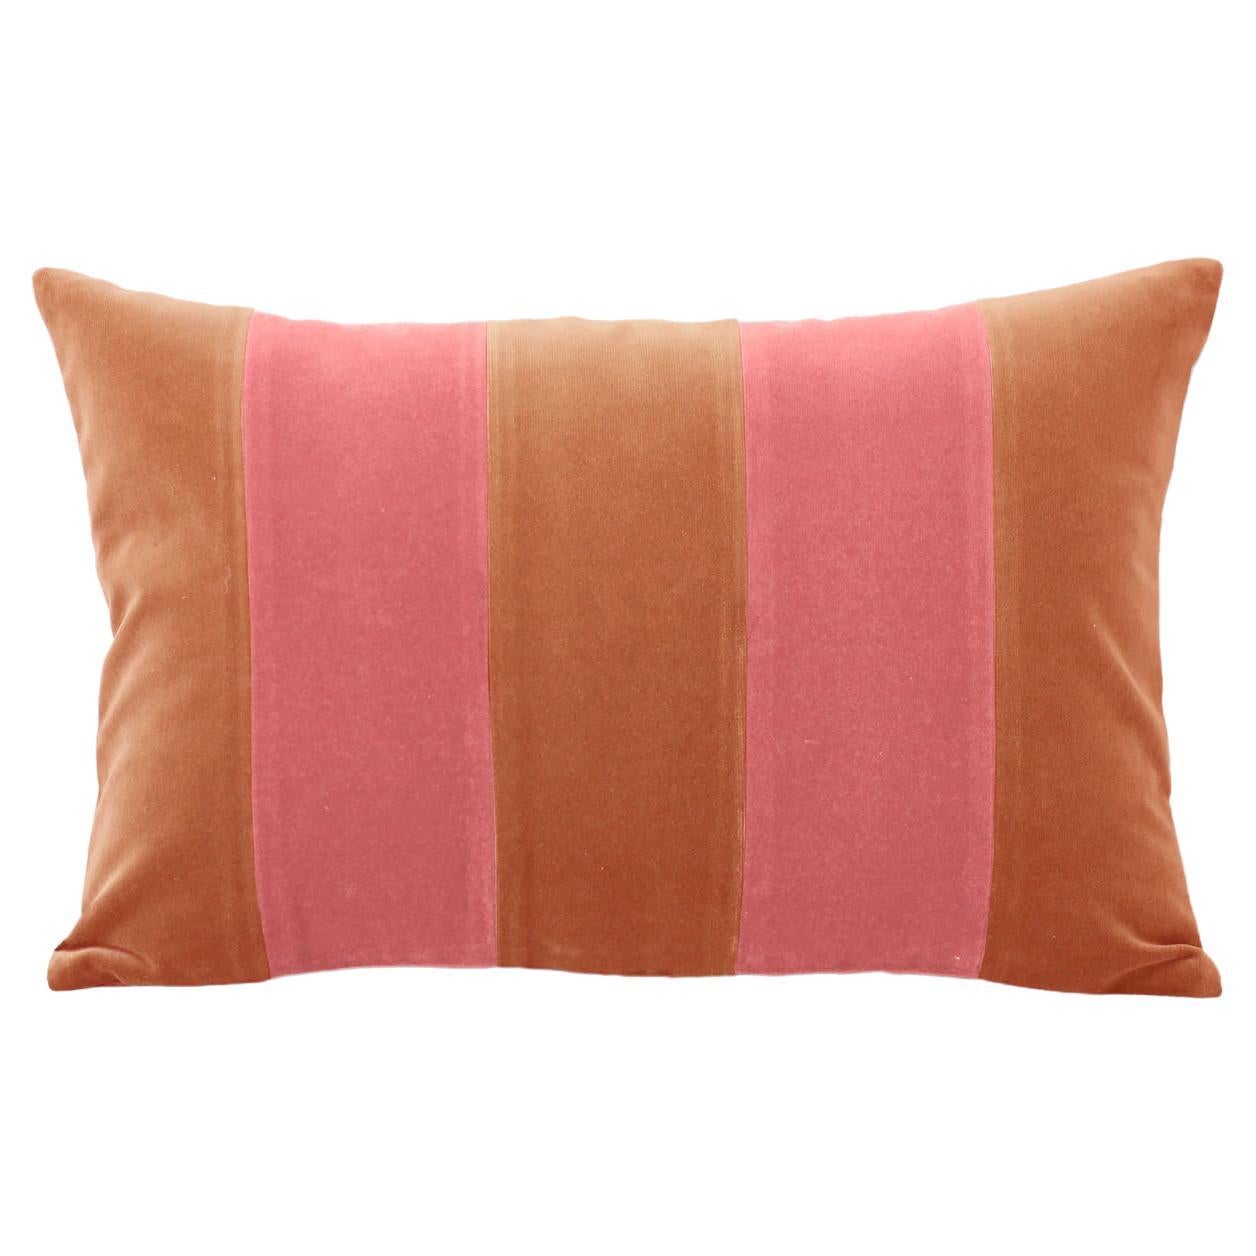 GEMMA II Camel & Rose Velvet Deluxe Handmade Decorative Pillow